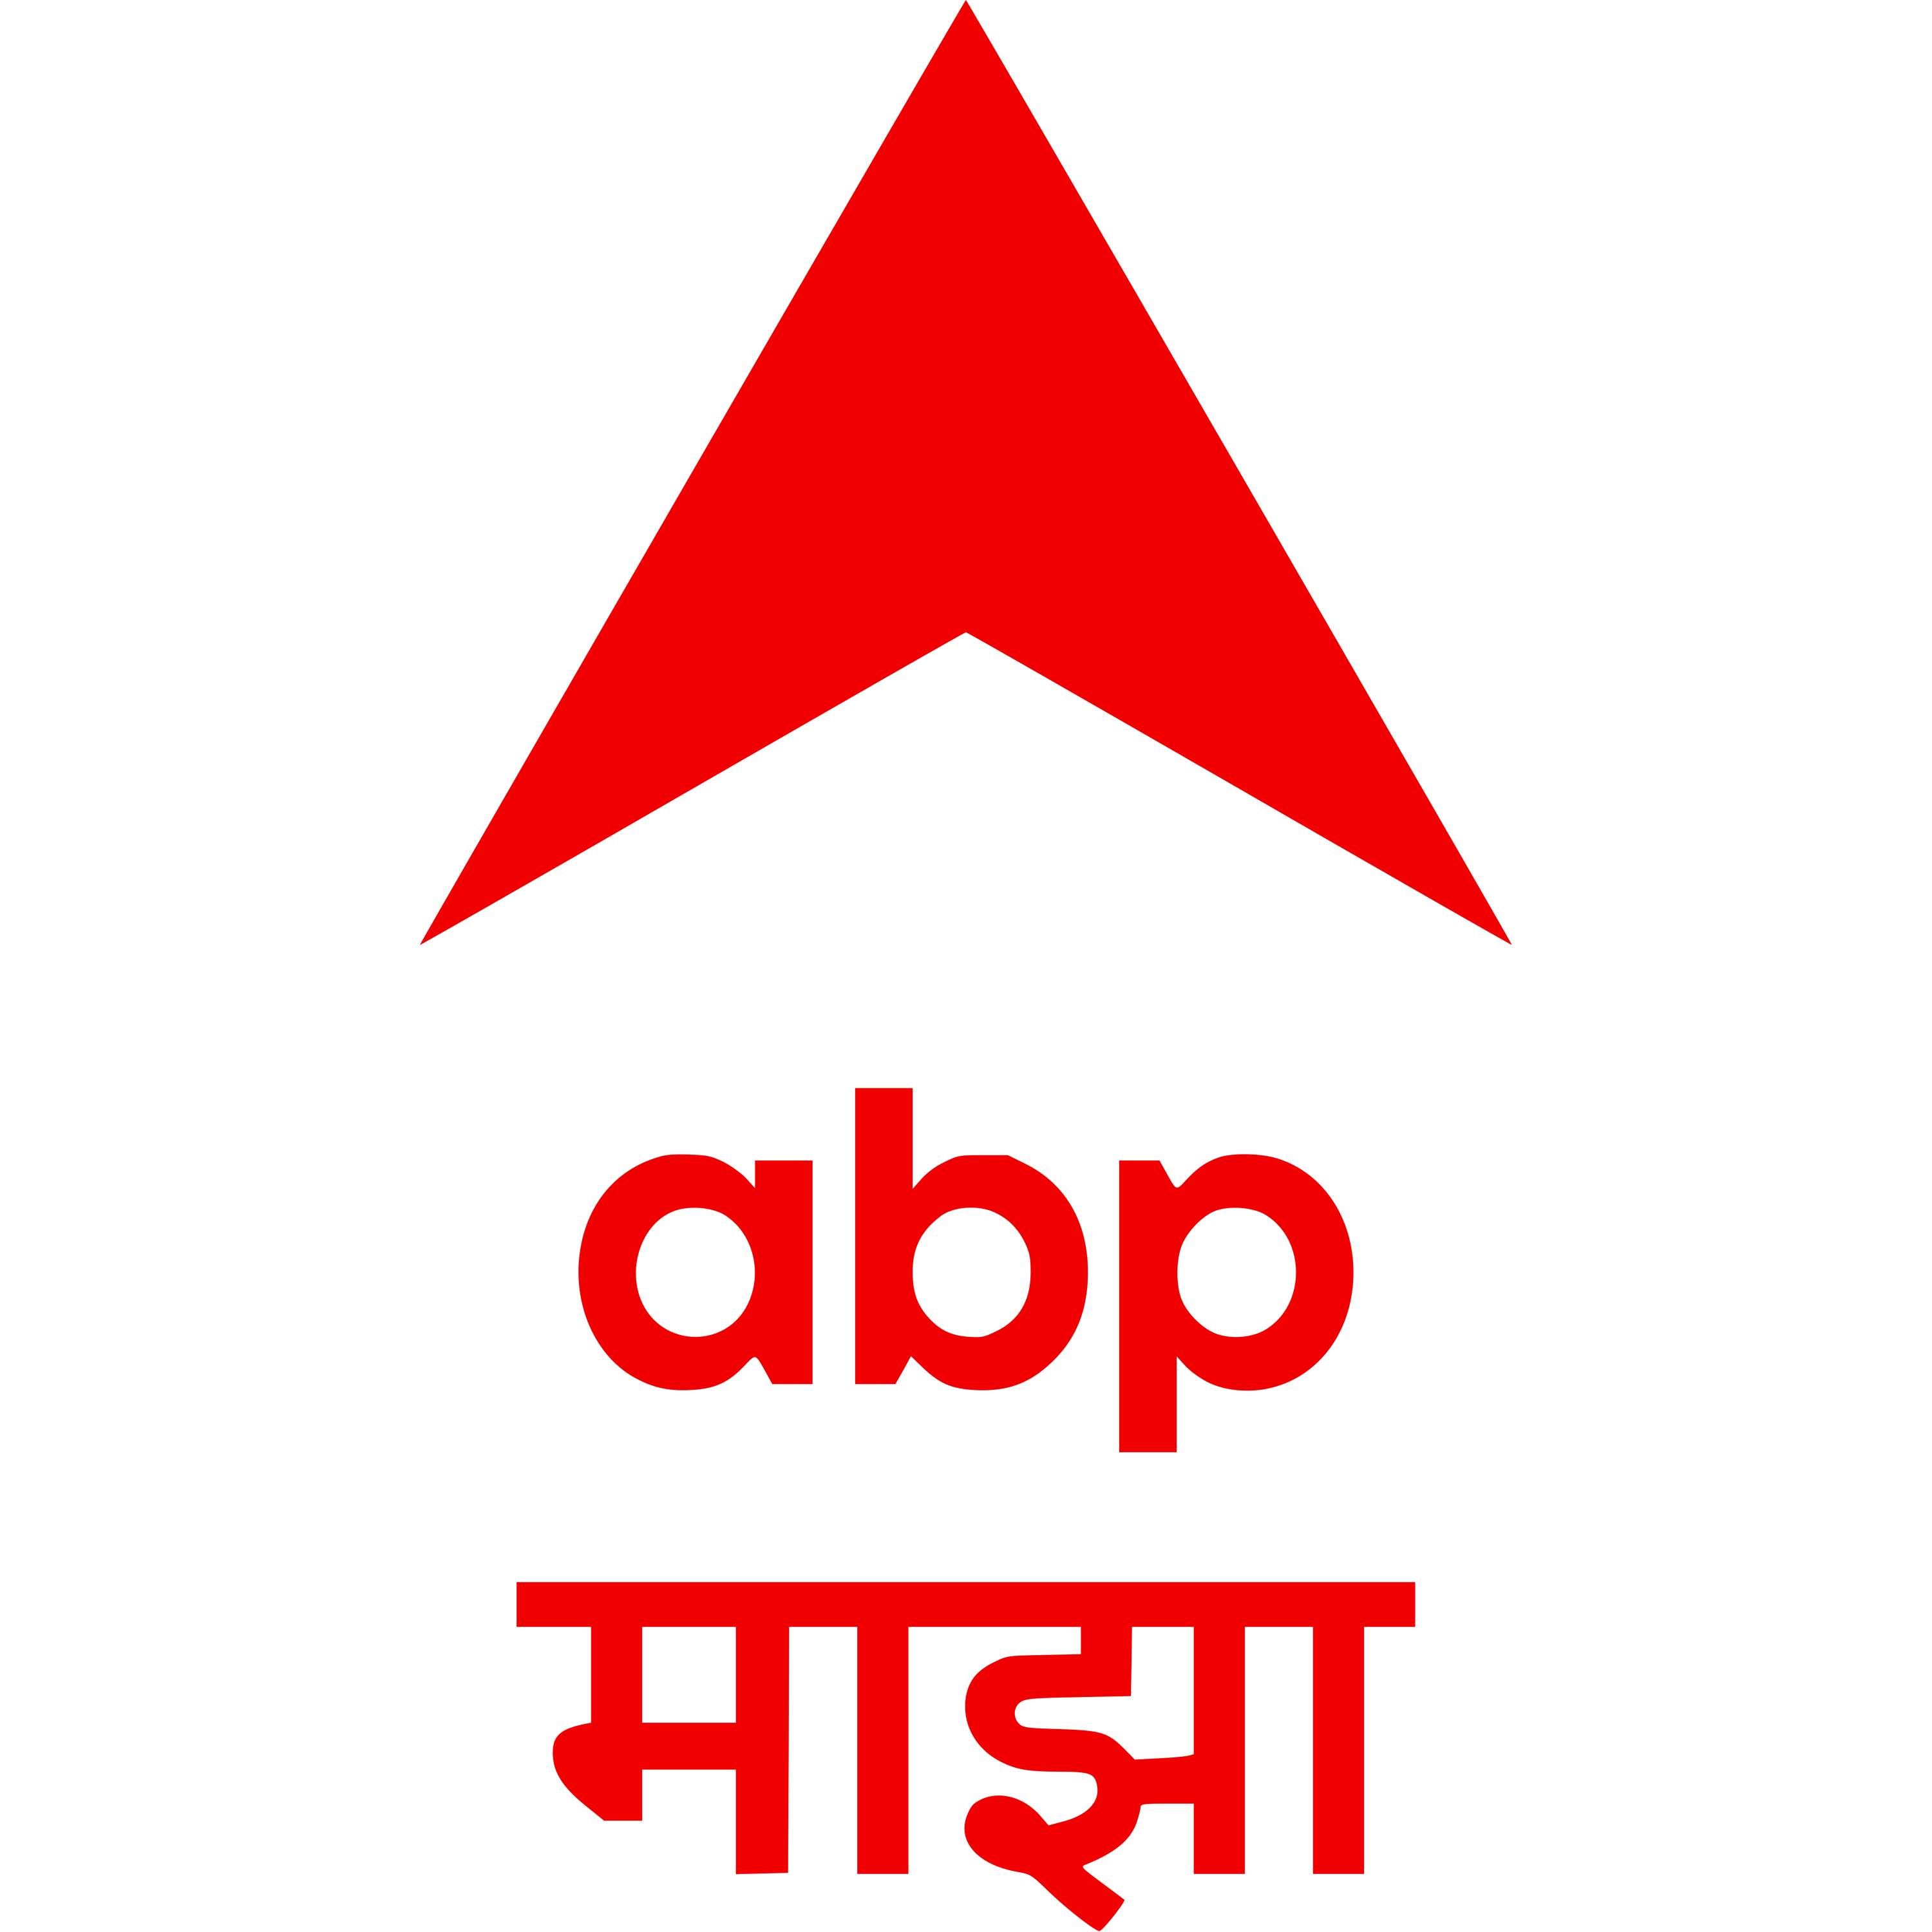 Abp Majha Logo Transparent Image